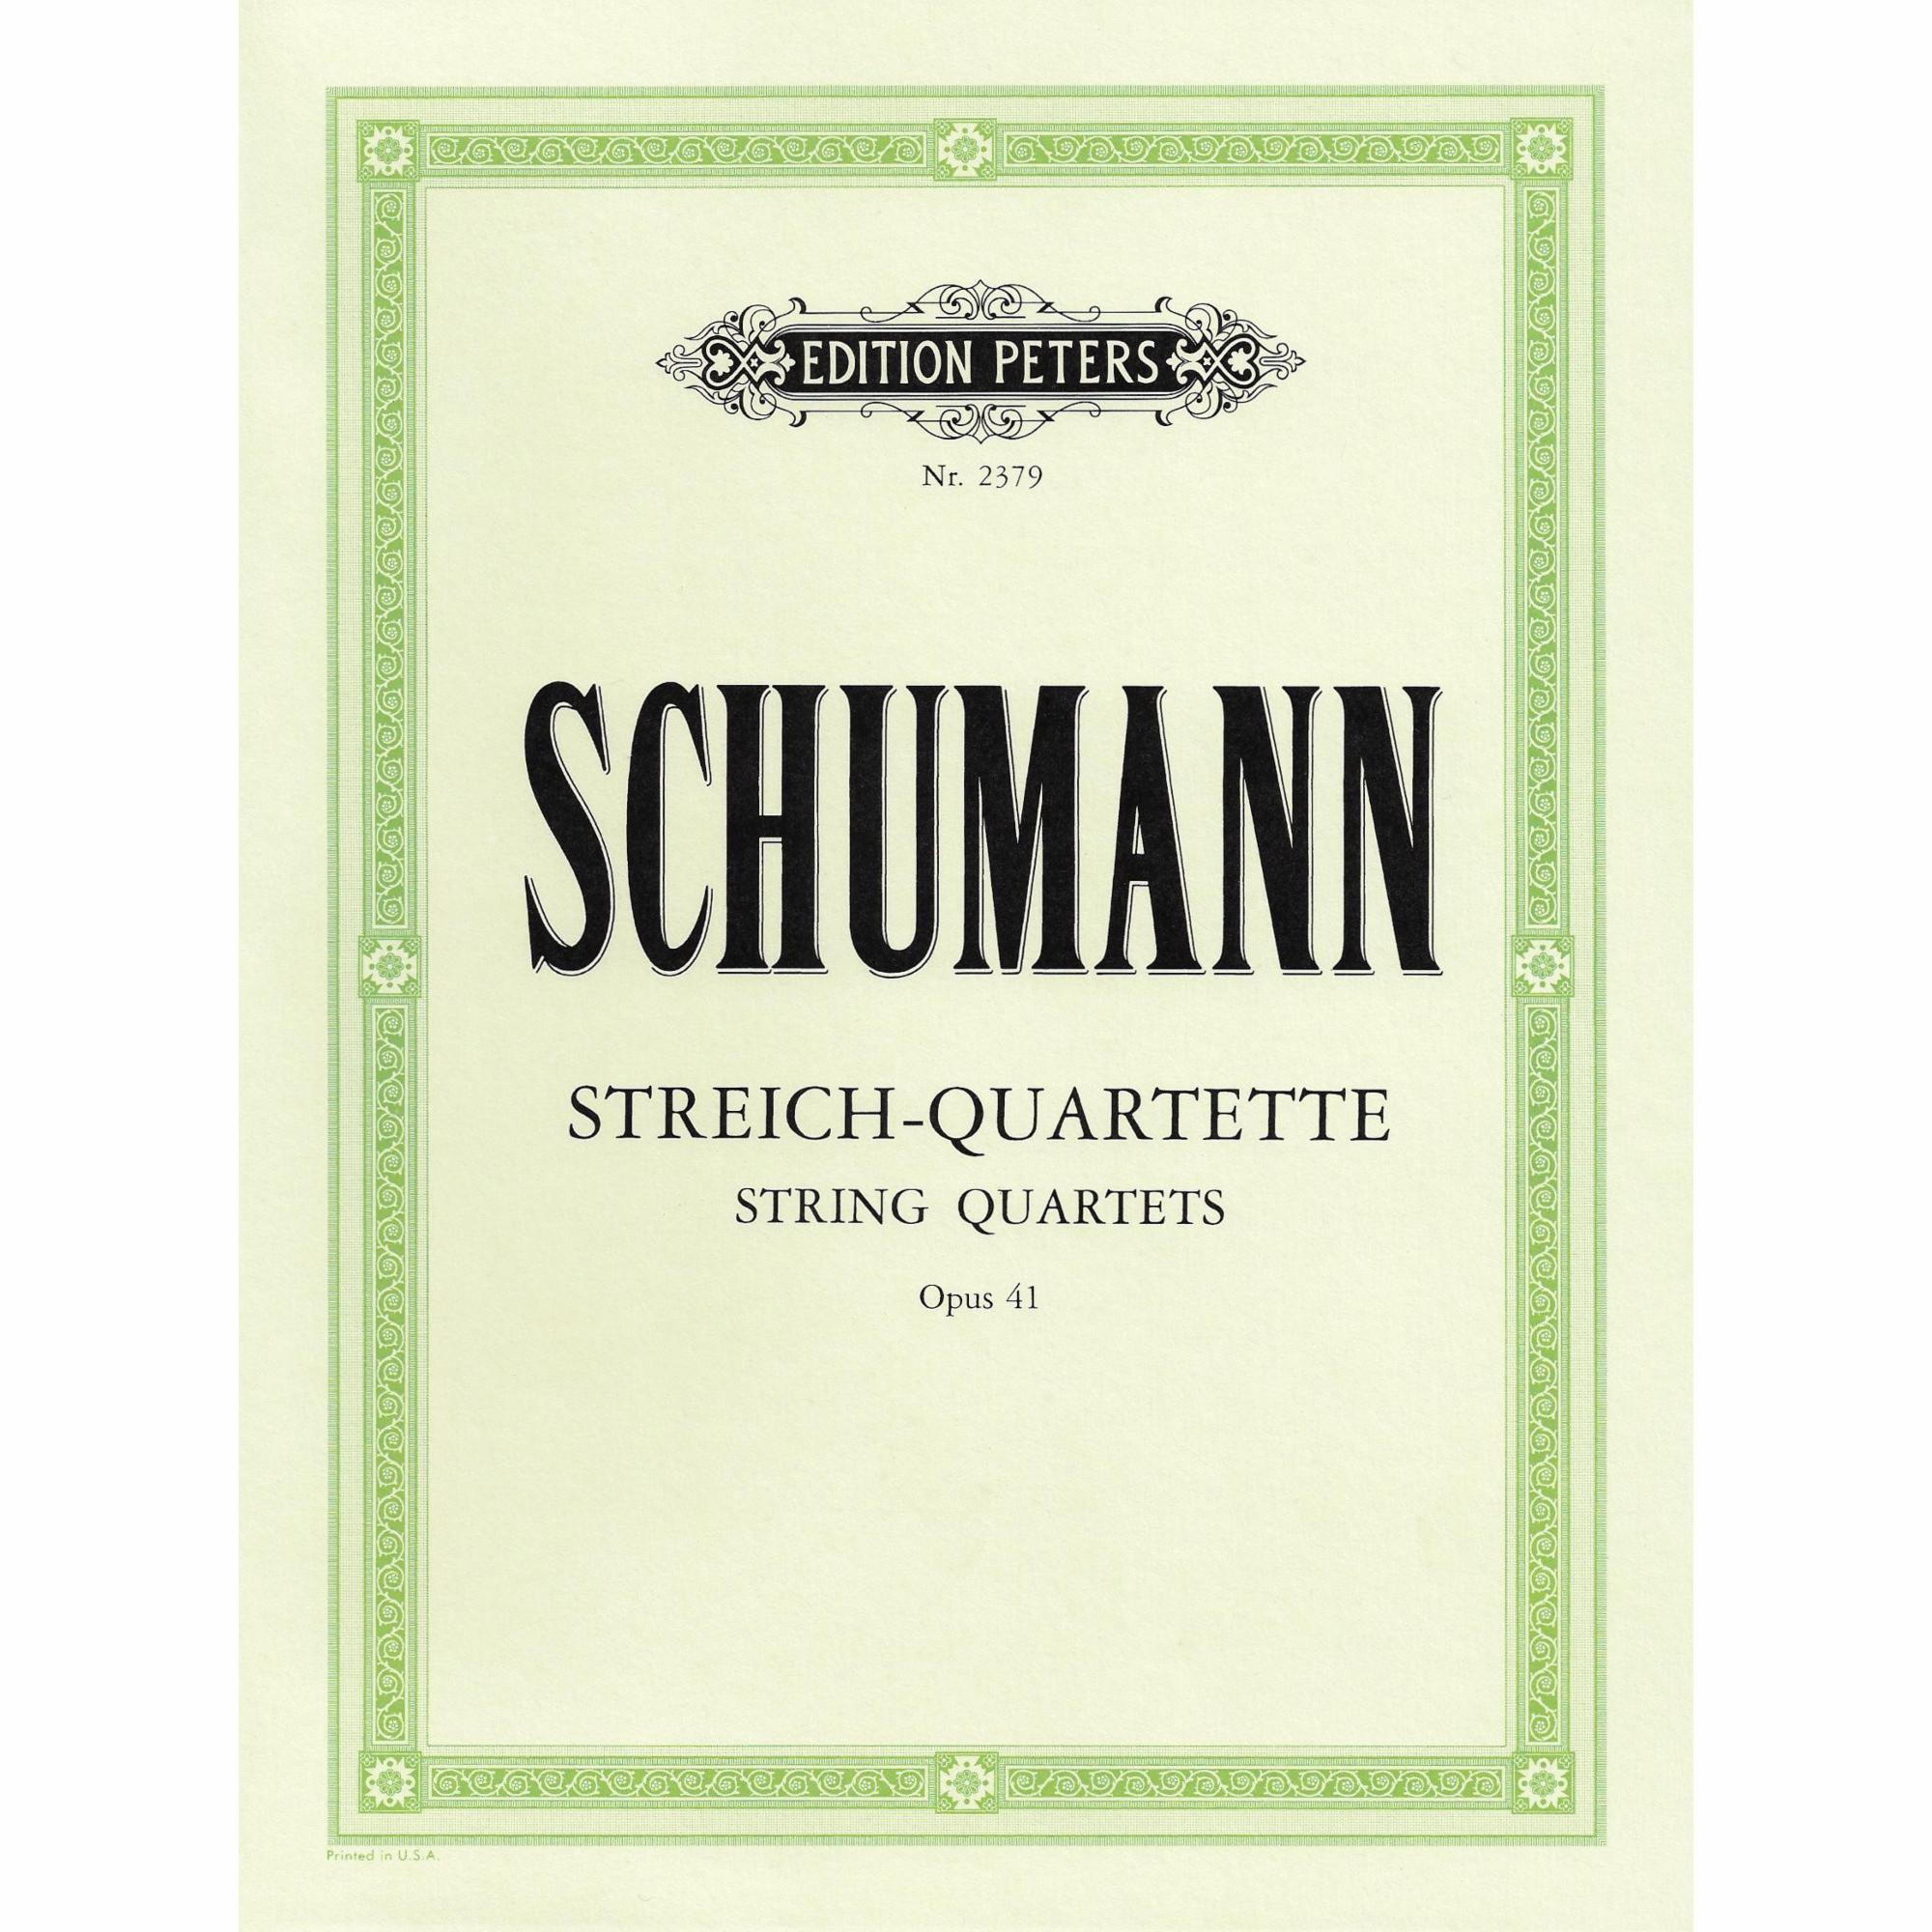 Schumann -- String Quartets, Op. 41